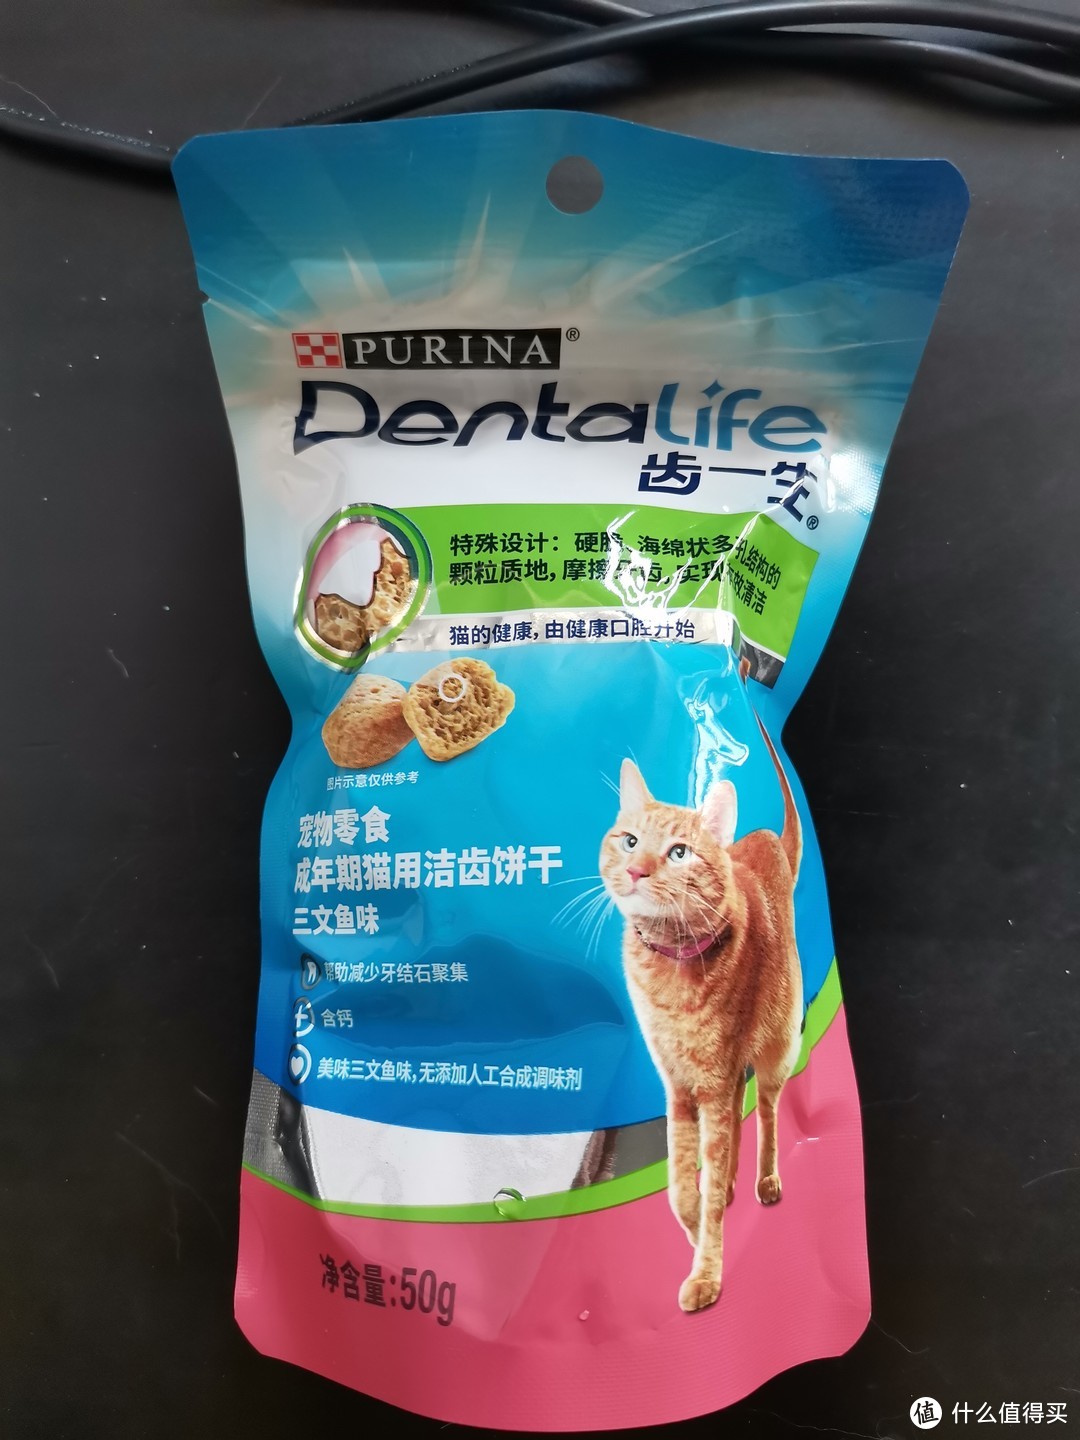 猫猫最近在吃博乐丹、齿一生、卫仕补充营养剂